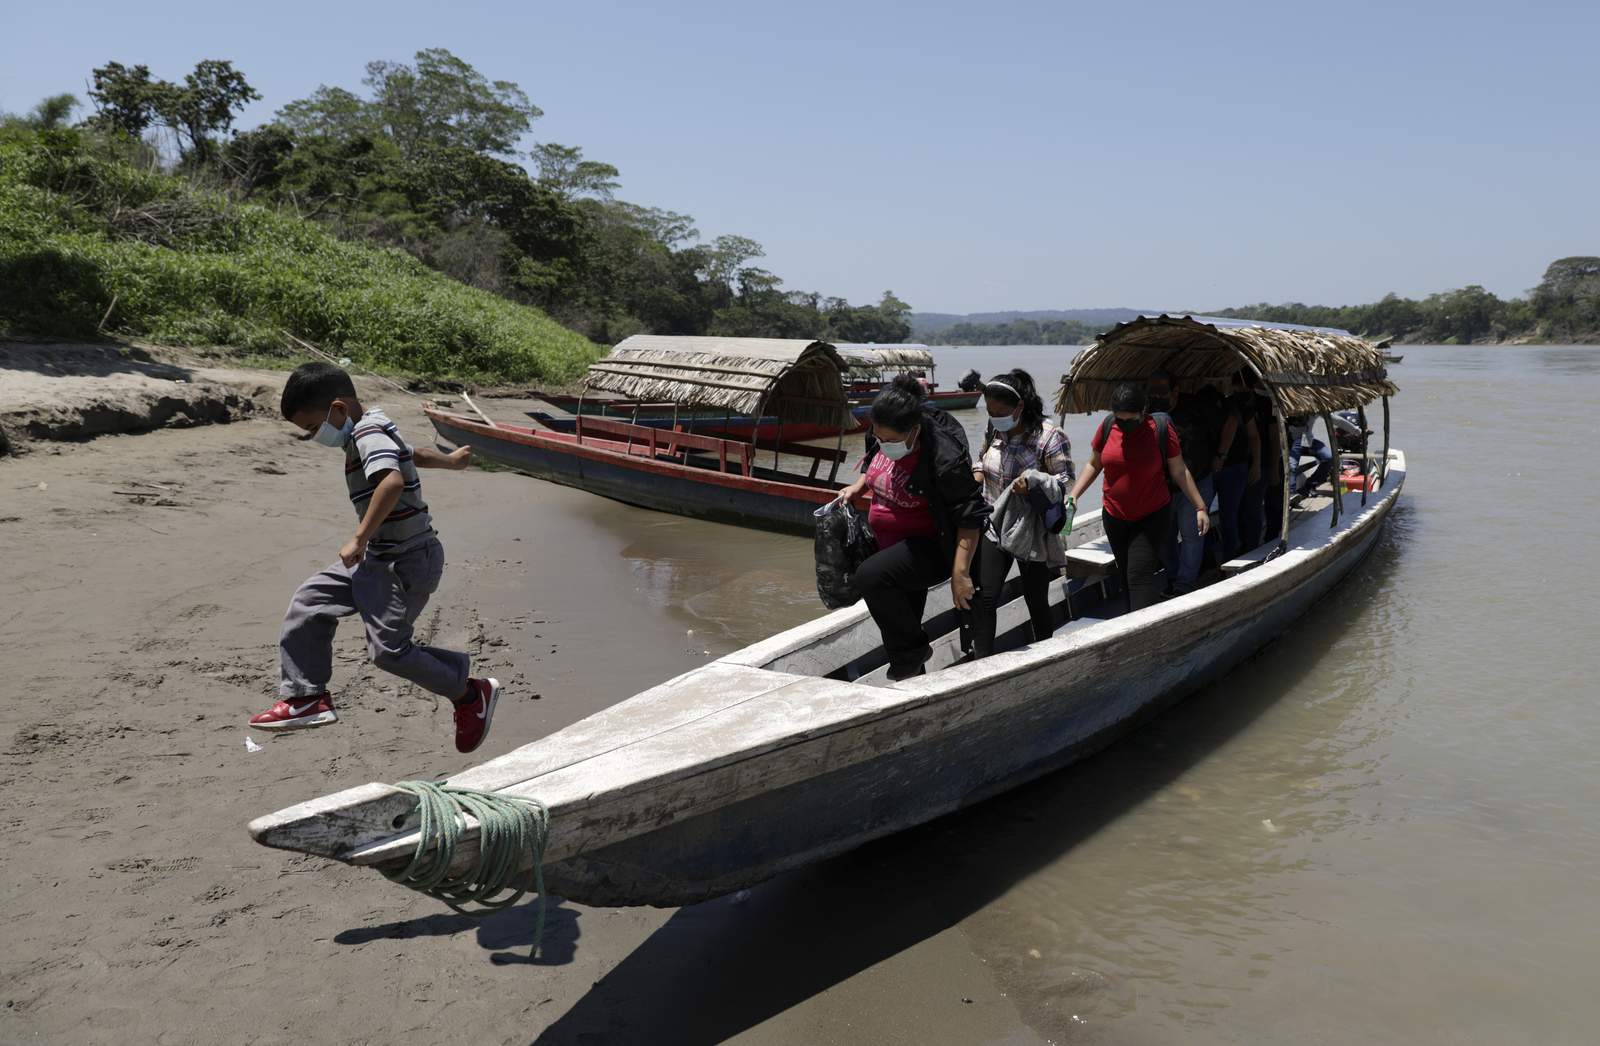 Guatemala declares emergency measures as new caravan rumored